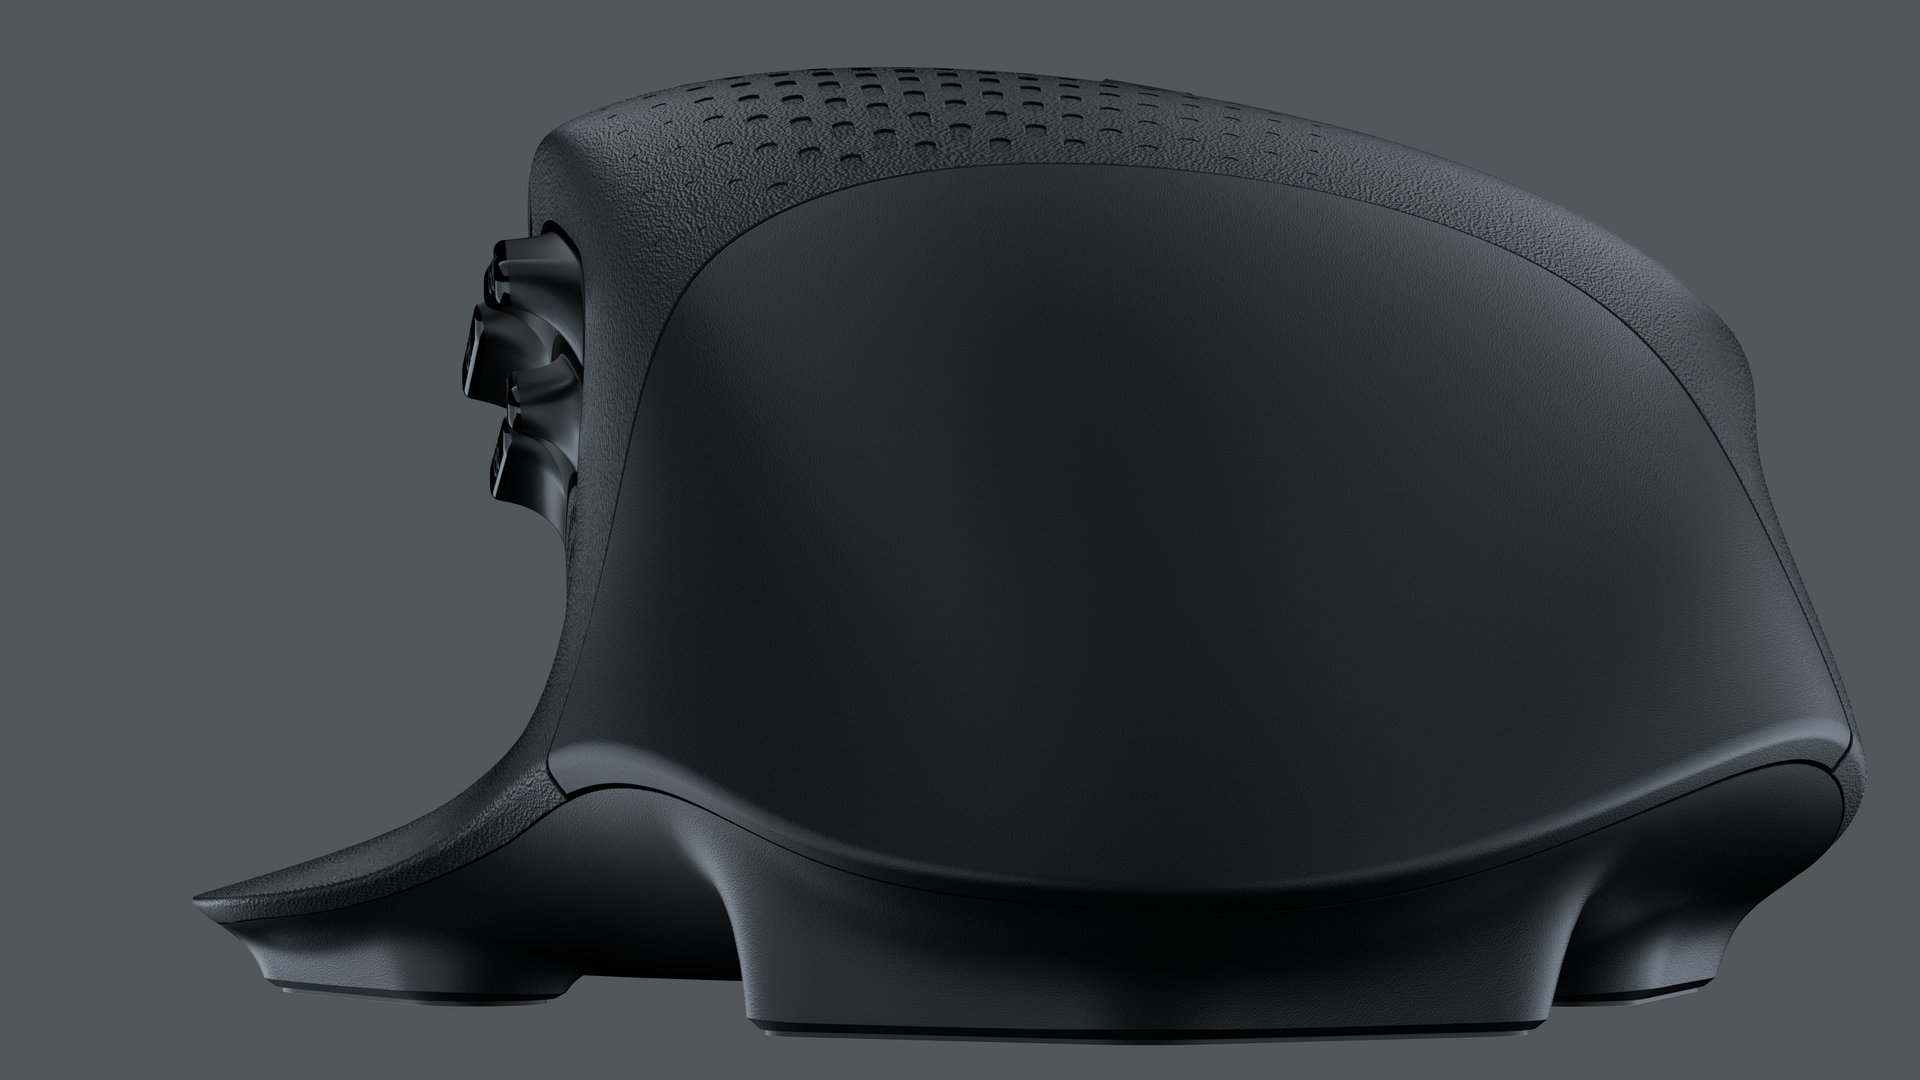 Image 8 : G604 Lightspeed : la nouvelle souris gaming sans fil de Logitech pour les MMO